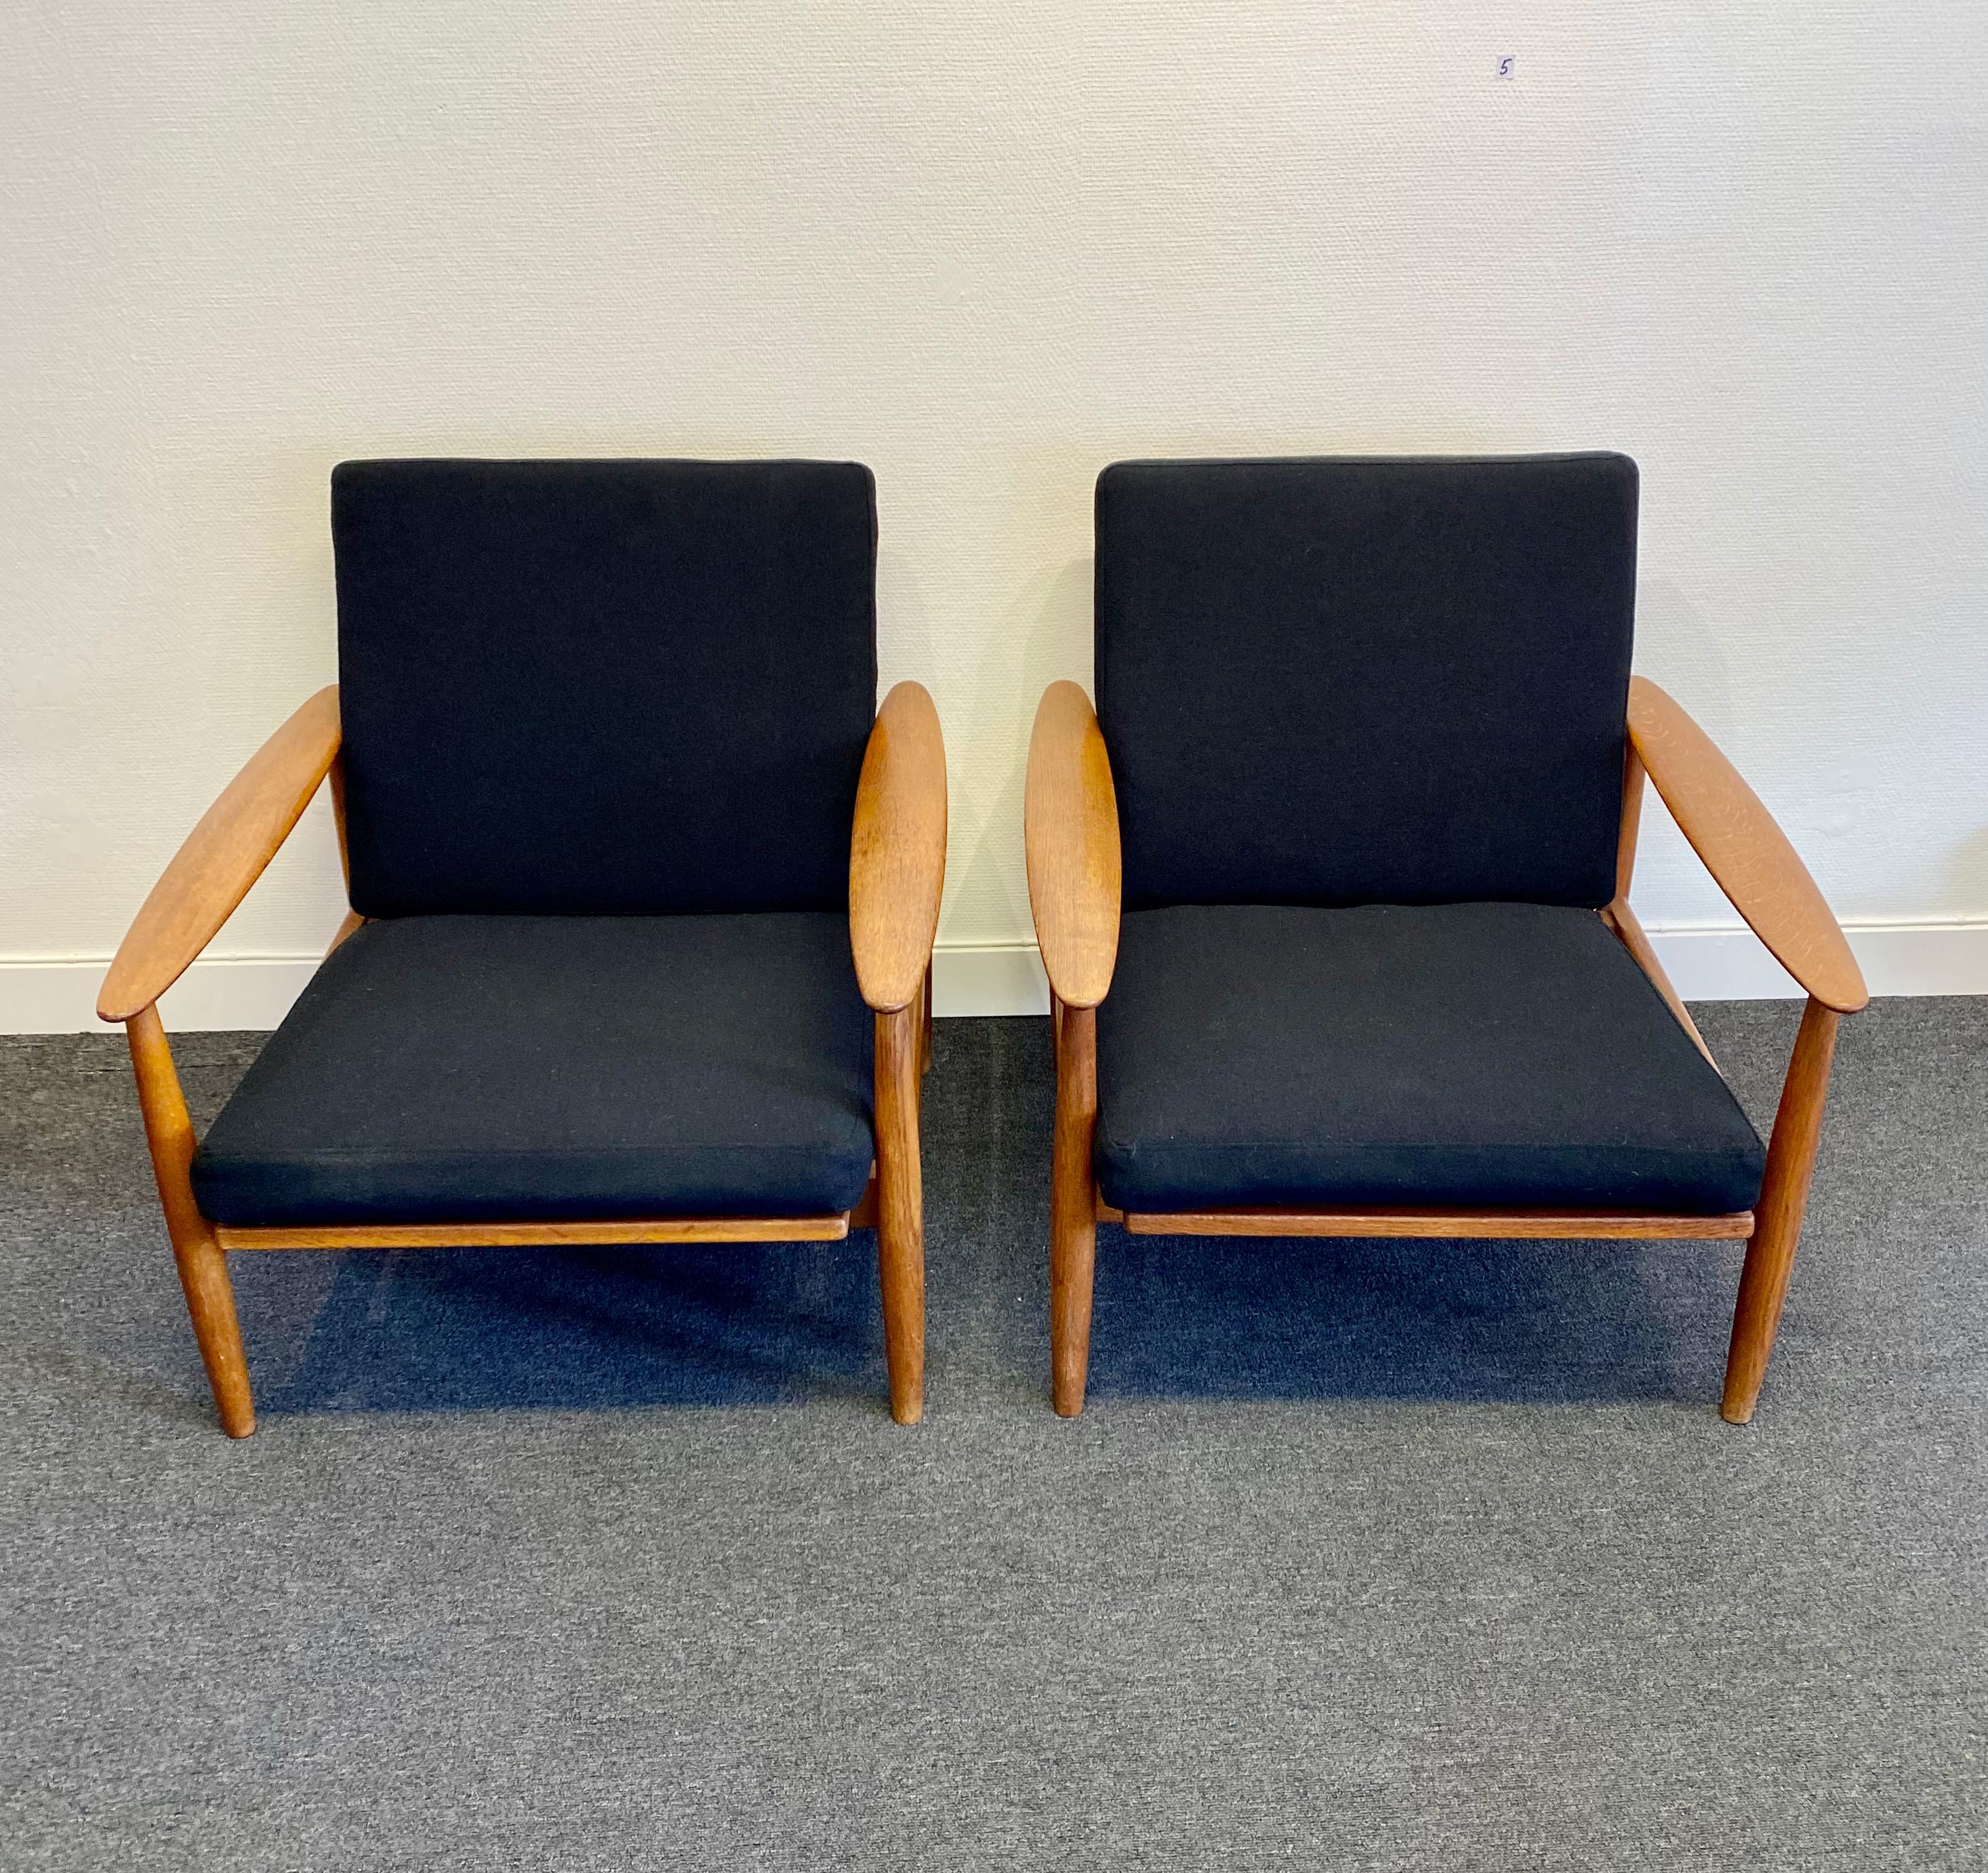 Un ensemble de 2 chaises longues fabriquées au Danemark. Teck. Marqué BM 8 avec un tampon rouge en dessous. Rembourrage en tissu de laine de nouvelle qualité. Excellent état vintage.